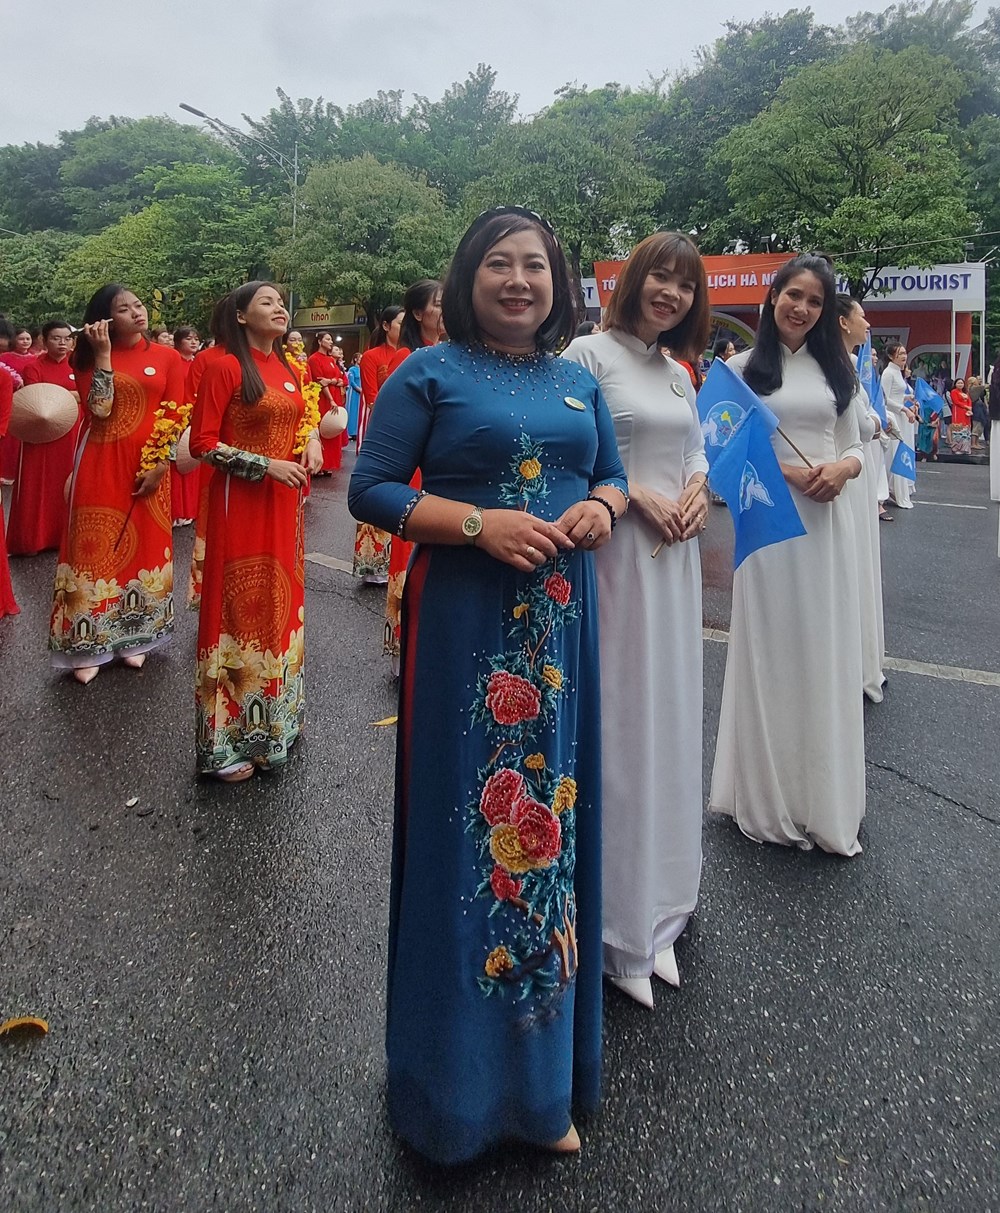 Mỗi hội viên phụ nữ Thủ đô sẽ là một đại sứ du lịch với áo dài truyền thống của dân tộc  - ảnh 12